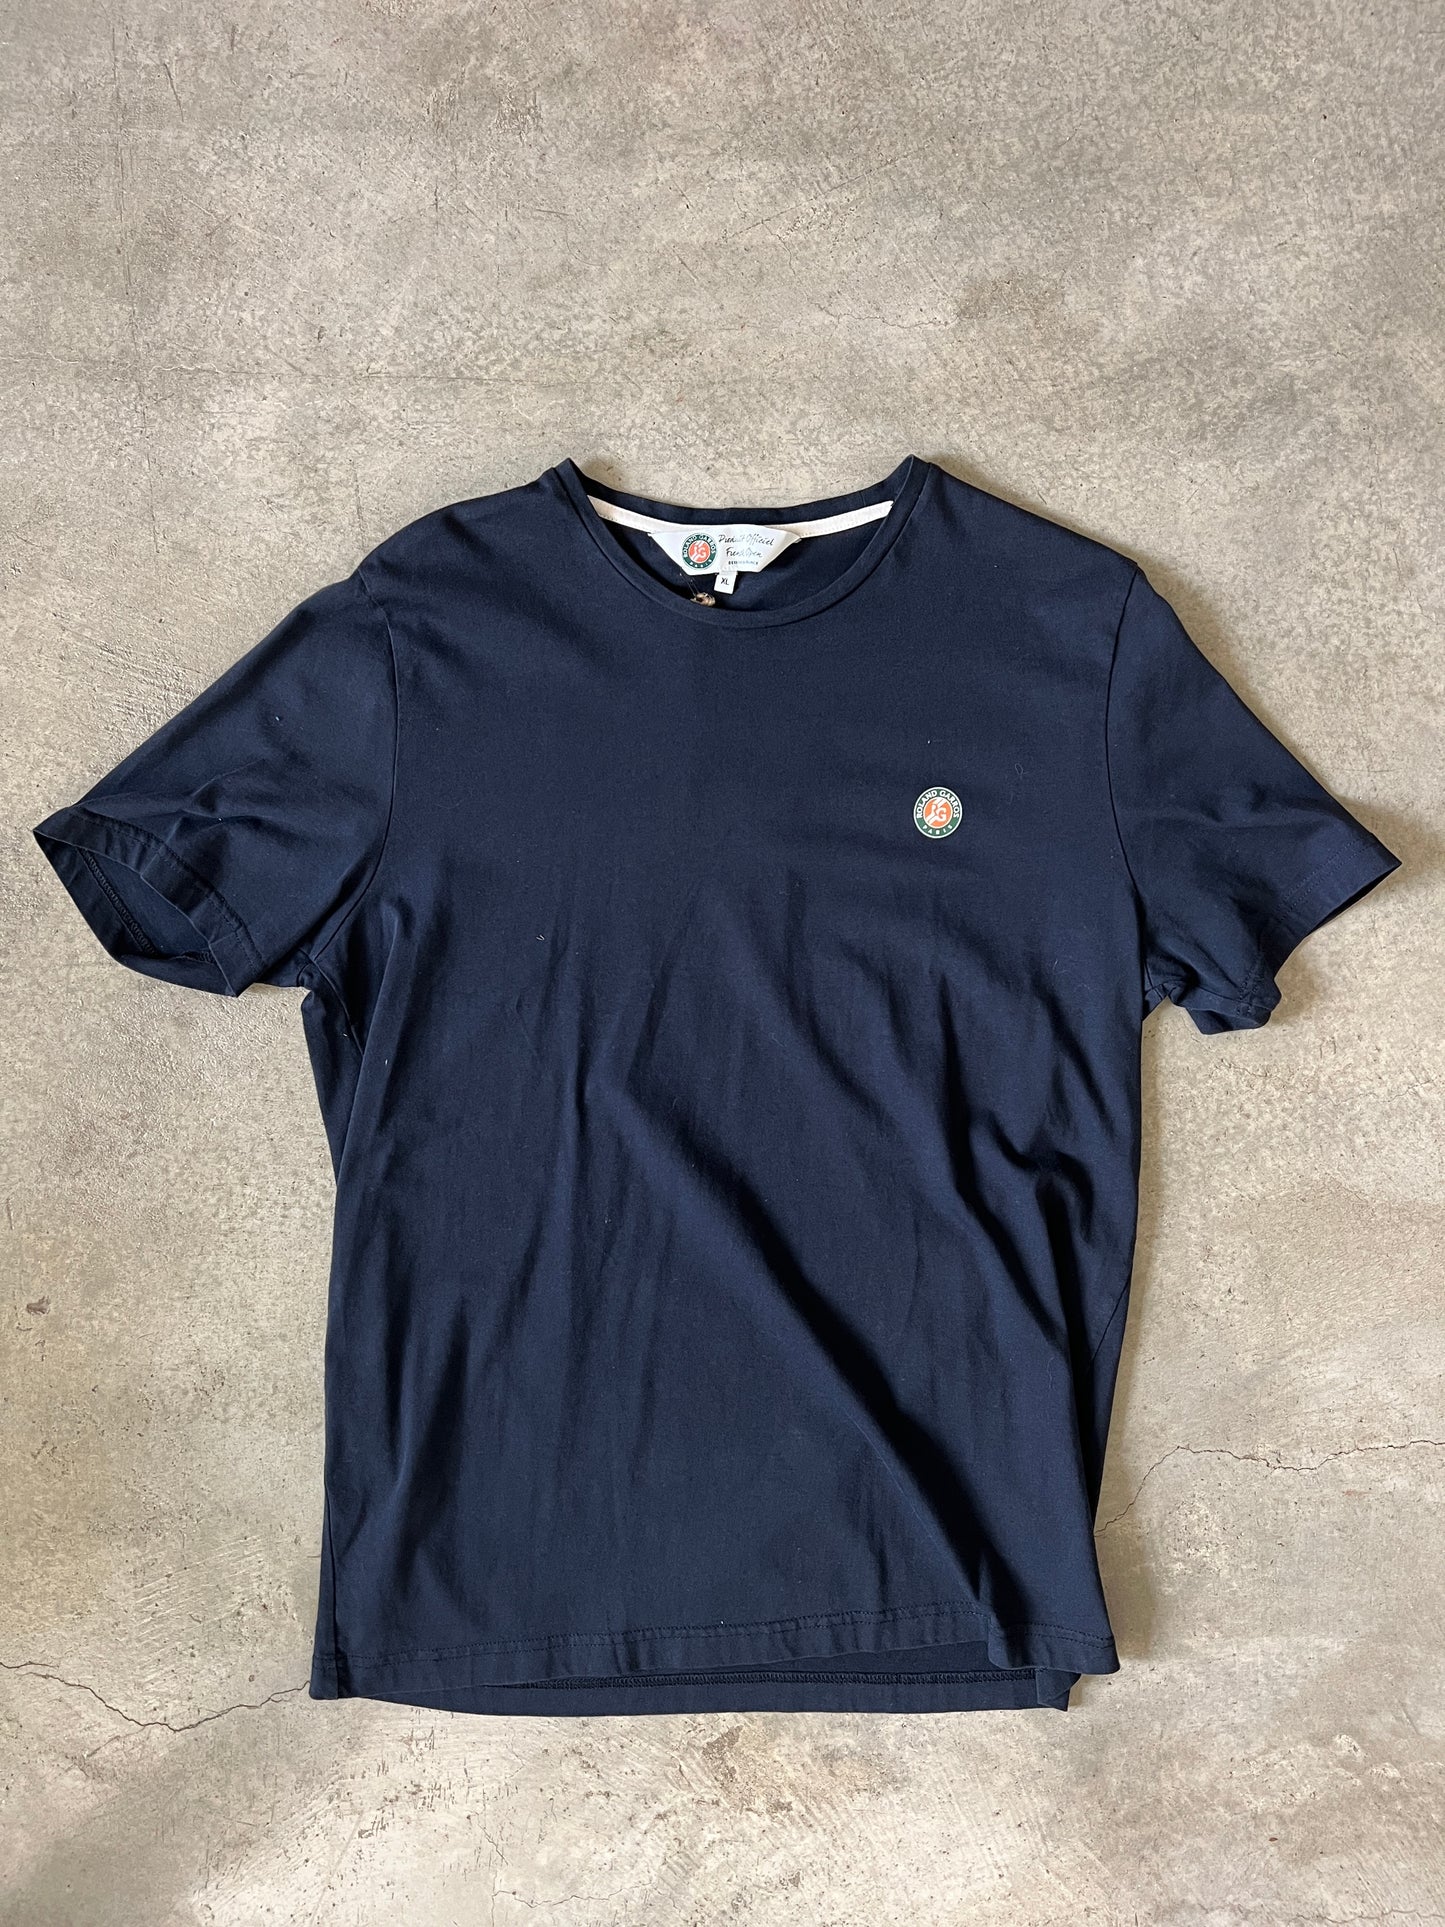 Roland Garros T-Shirt (2017) (Rare)